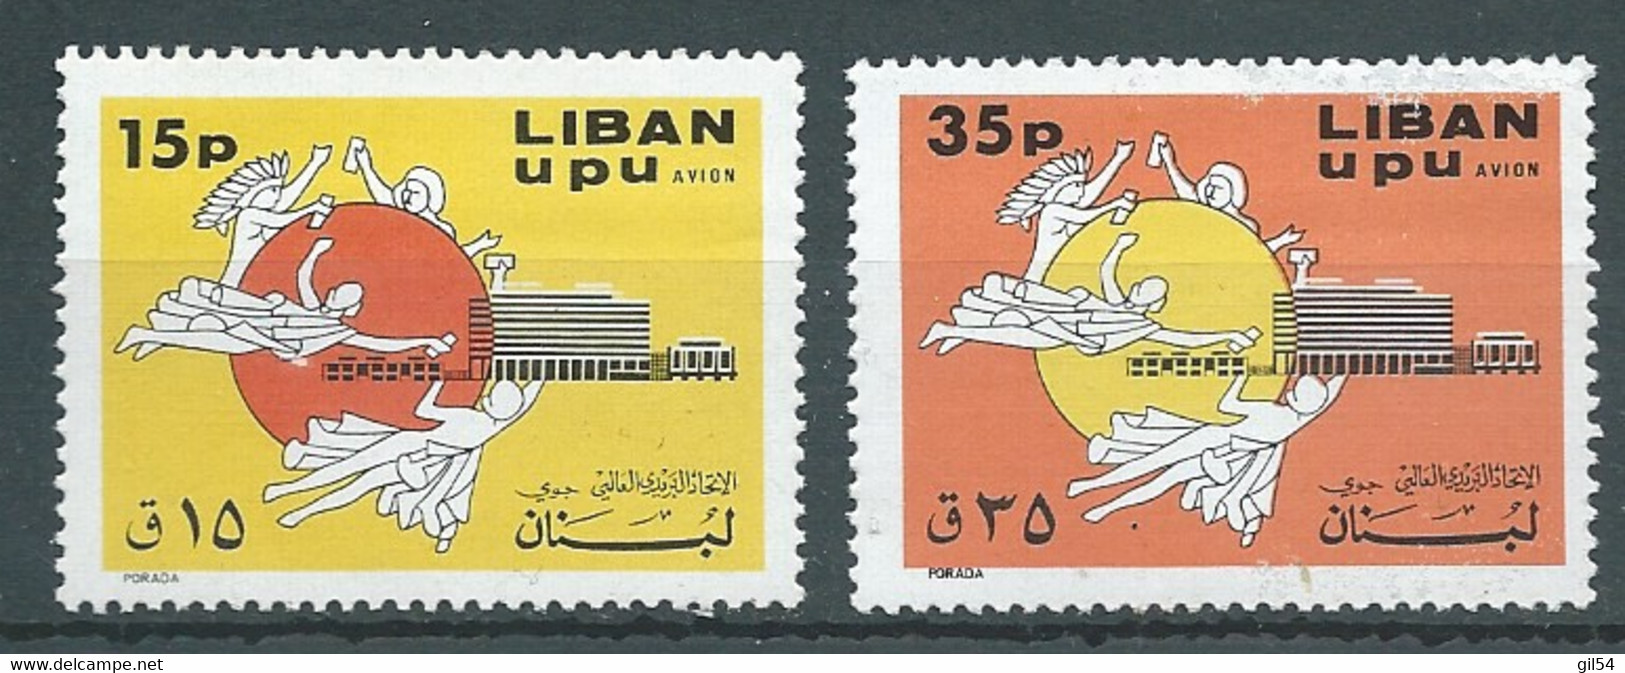 Liban    Aérien  Série  - Yvert N° 514  à   515  **      2  Valeurs Neuves Sans Charnière    -  AA19210 - Liban